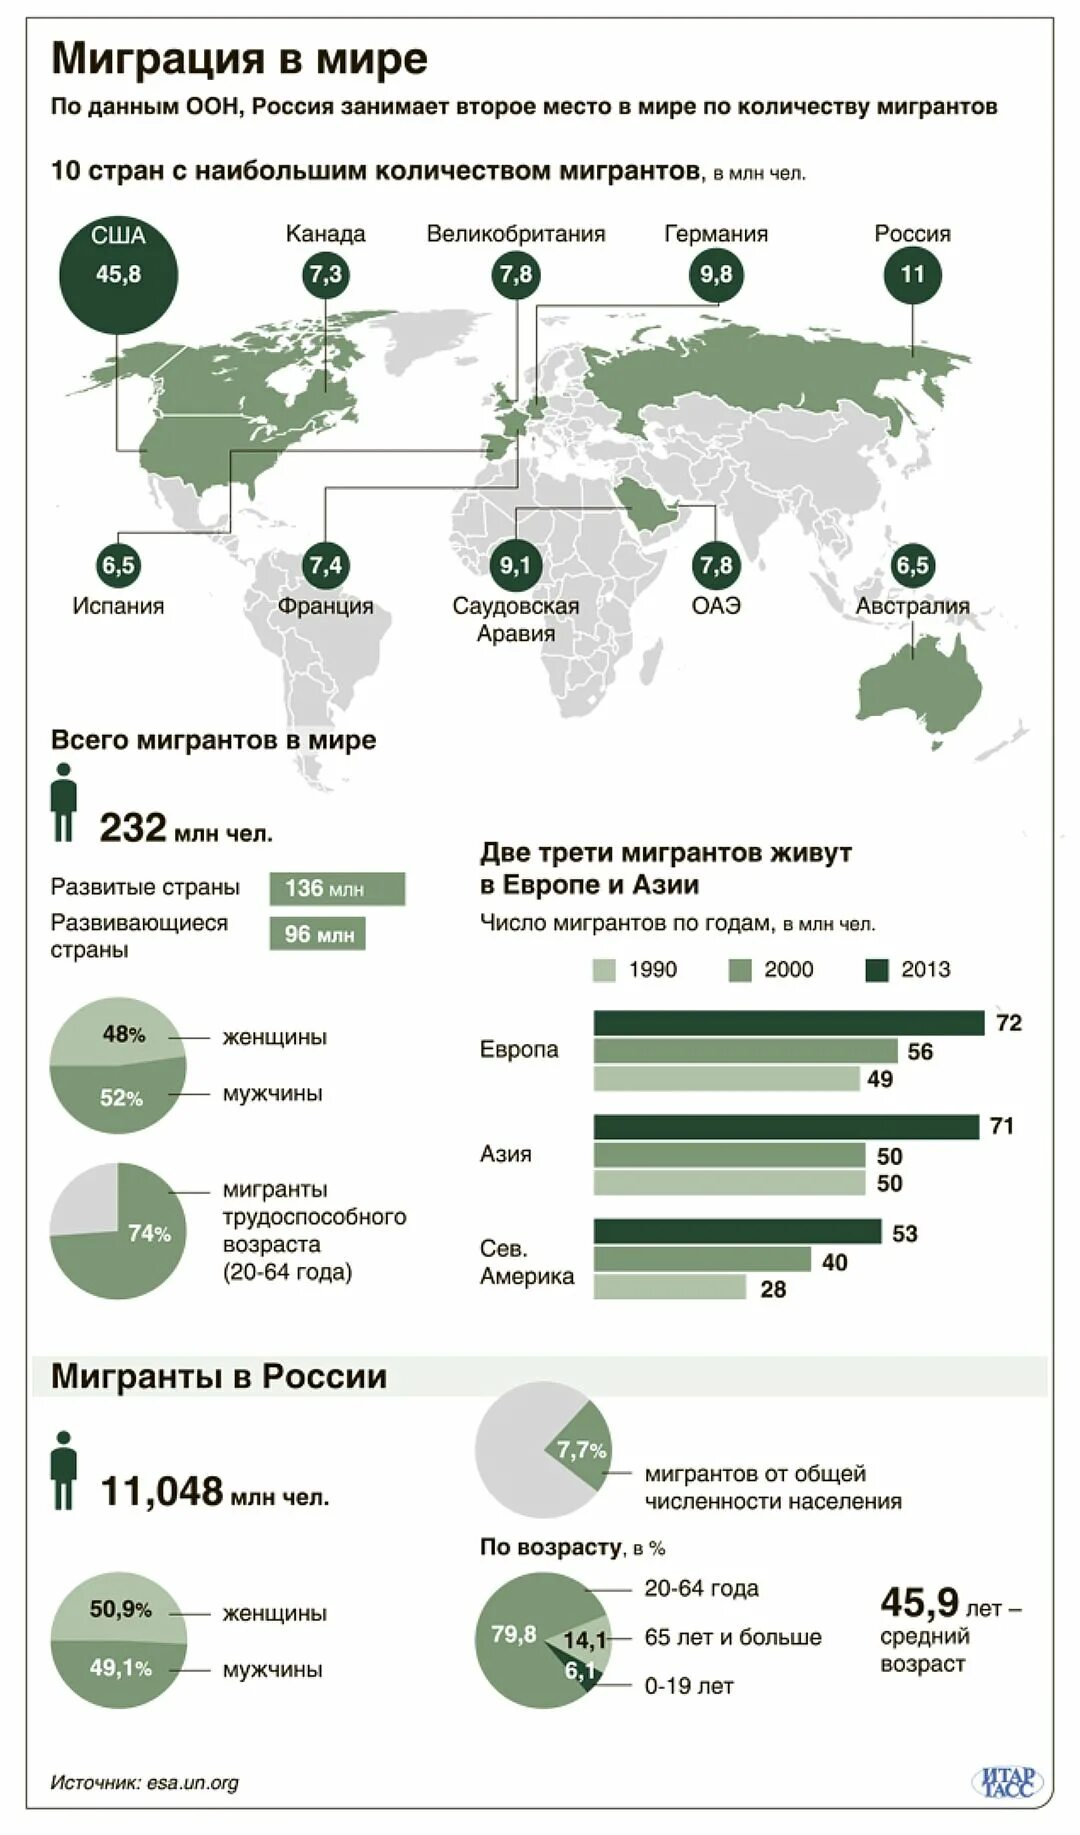 Международная миграция российской федерации. Статистика миграции в мире 2020. Миграция населения в России 2020. Международная миграция населения России по годам. Трудовая миграция статистика в мире.